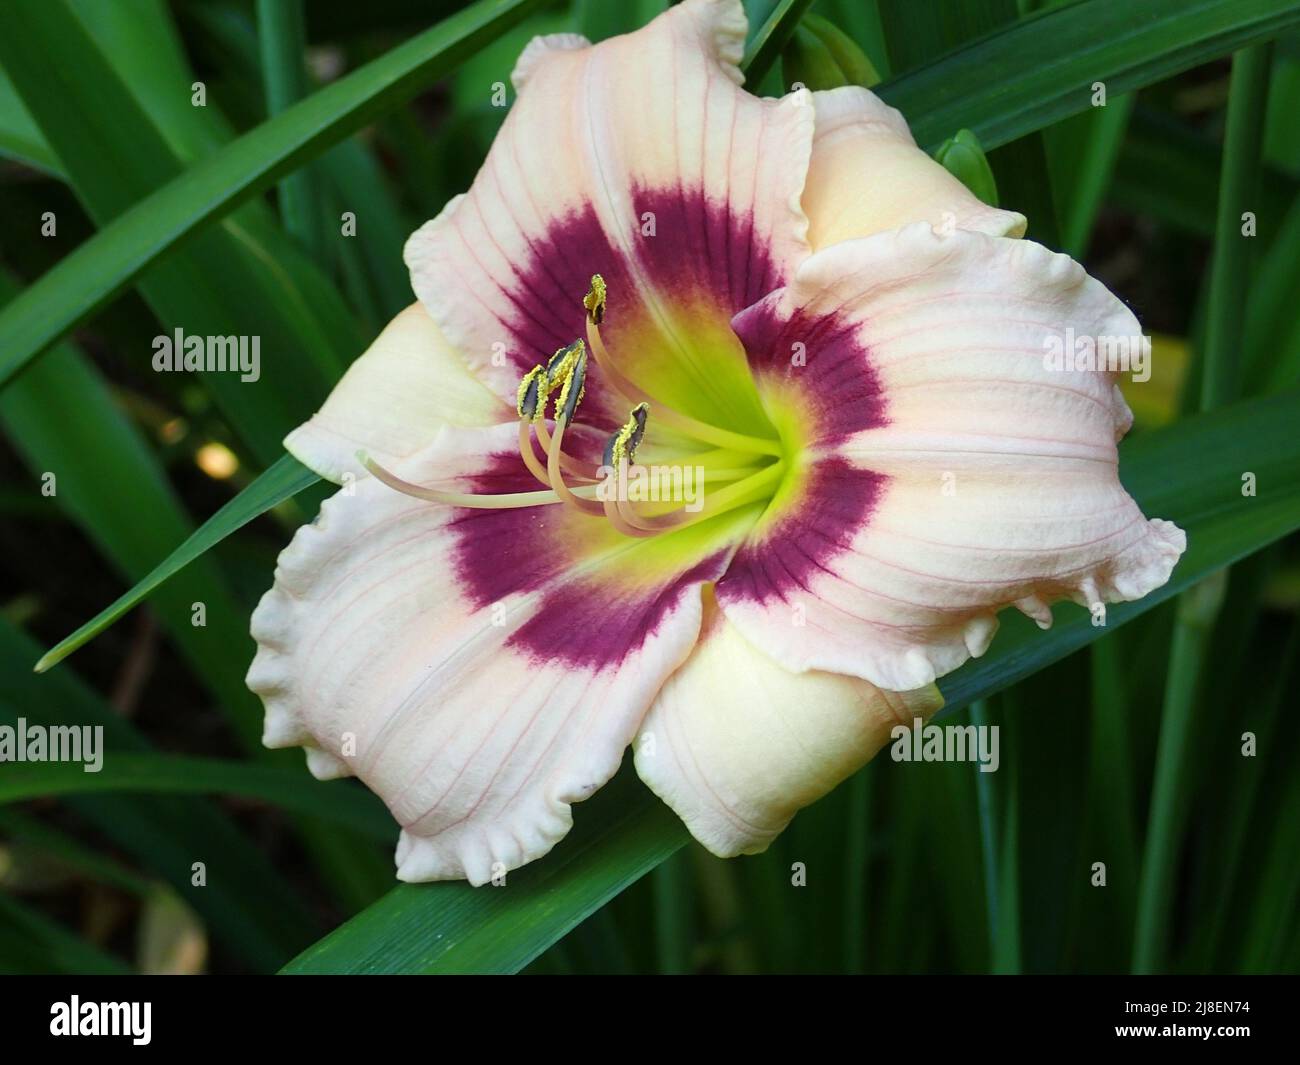 white and purple daylily Stock Photo